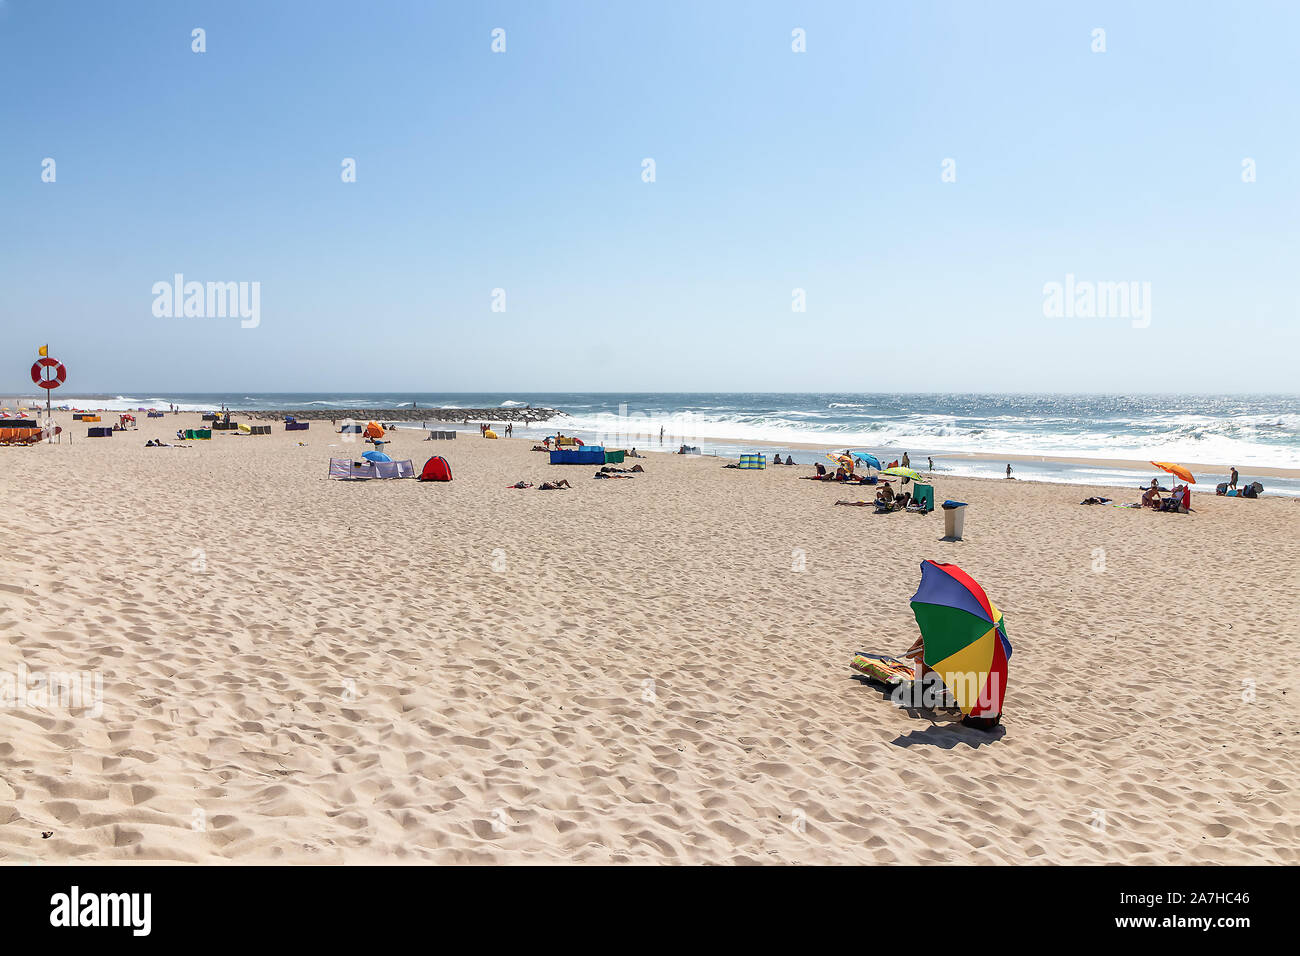 Voir à la plage avec les personnes prenant le soleil sur la plage. Océan Atlantique, Costa Nova, Portugal Banque D'Images